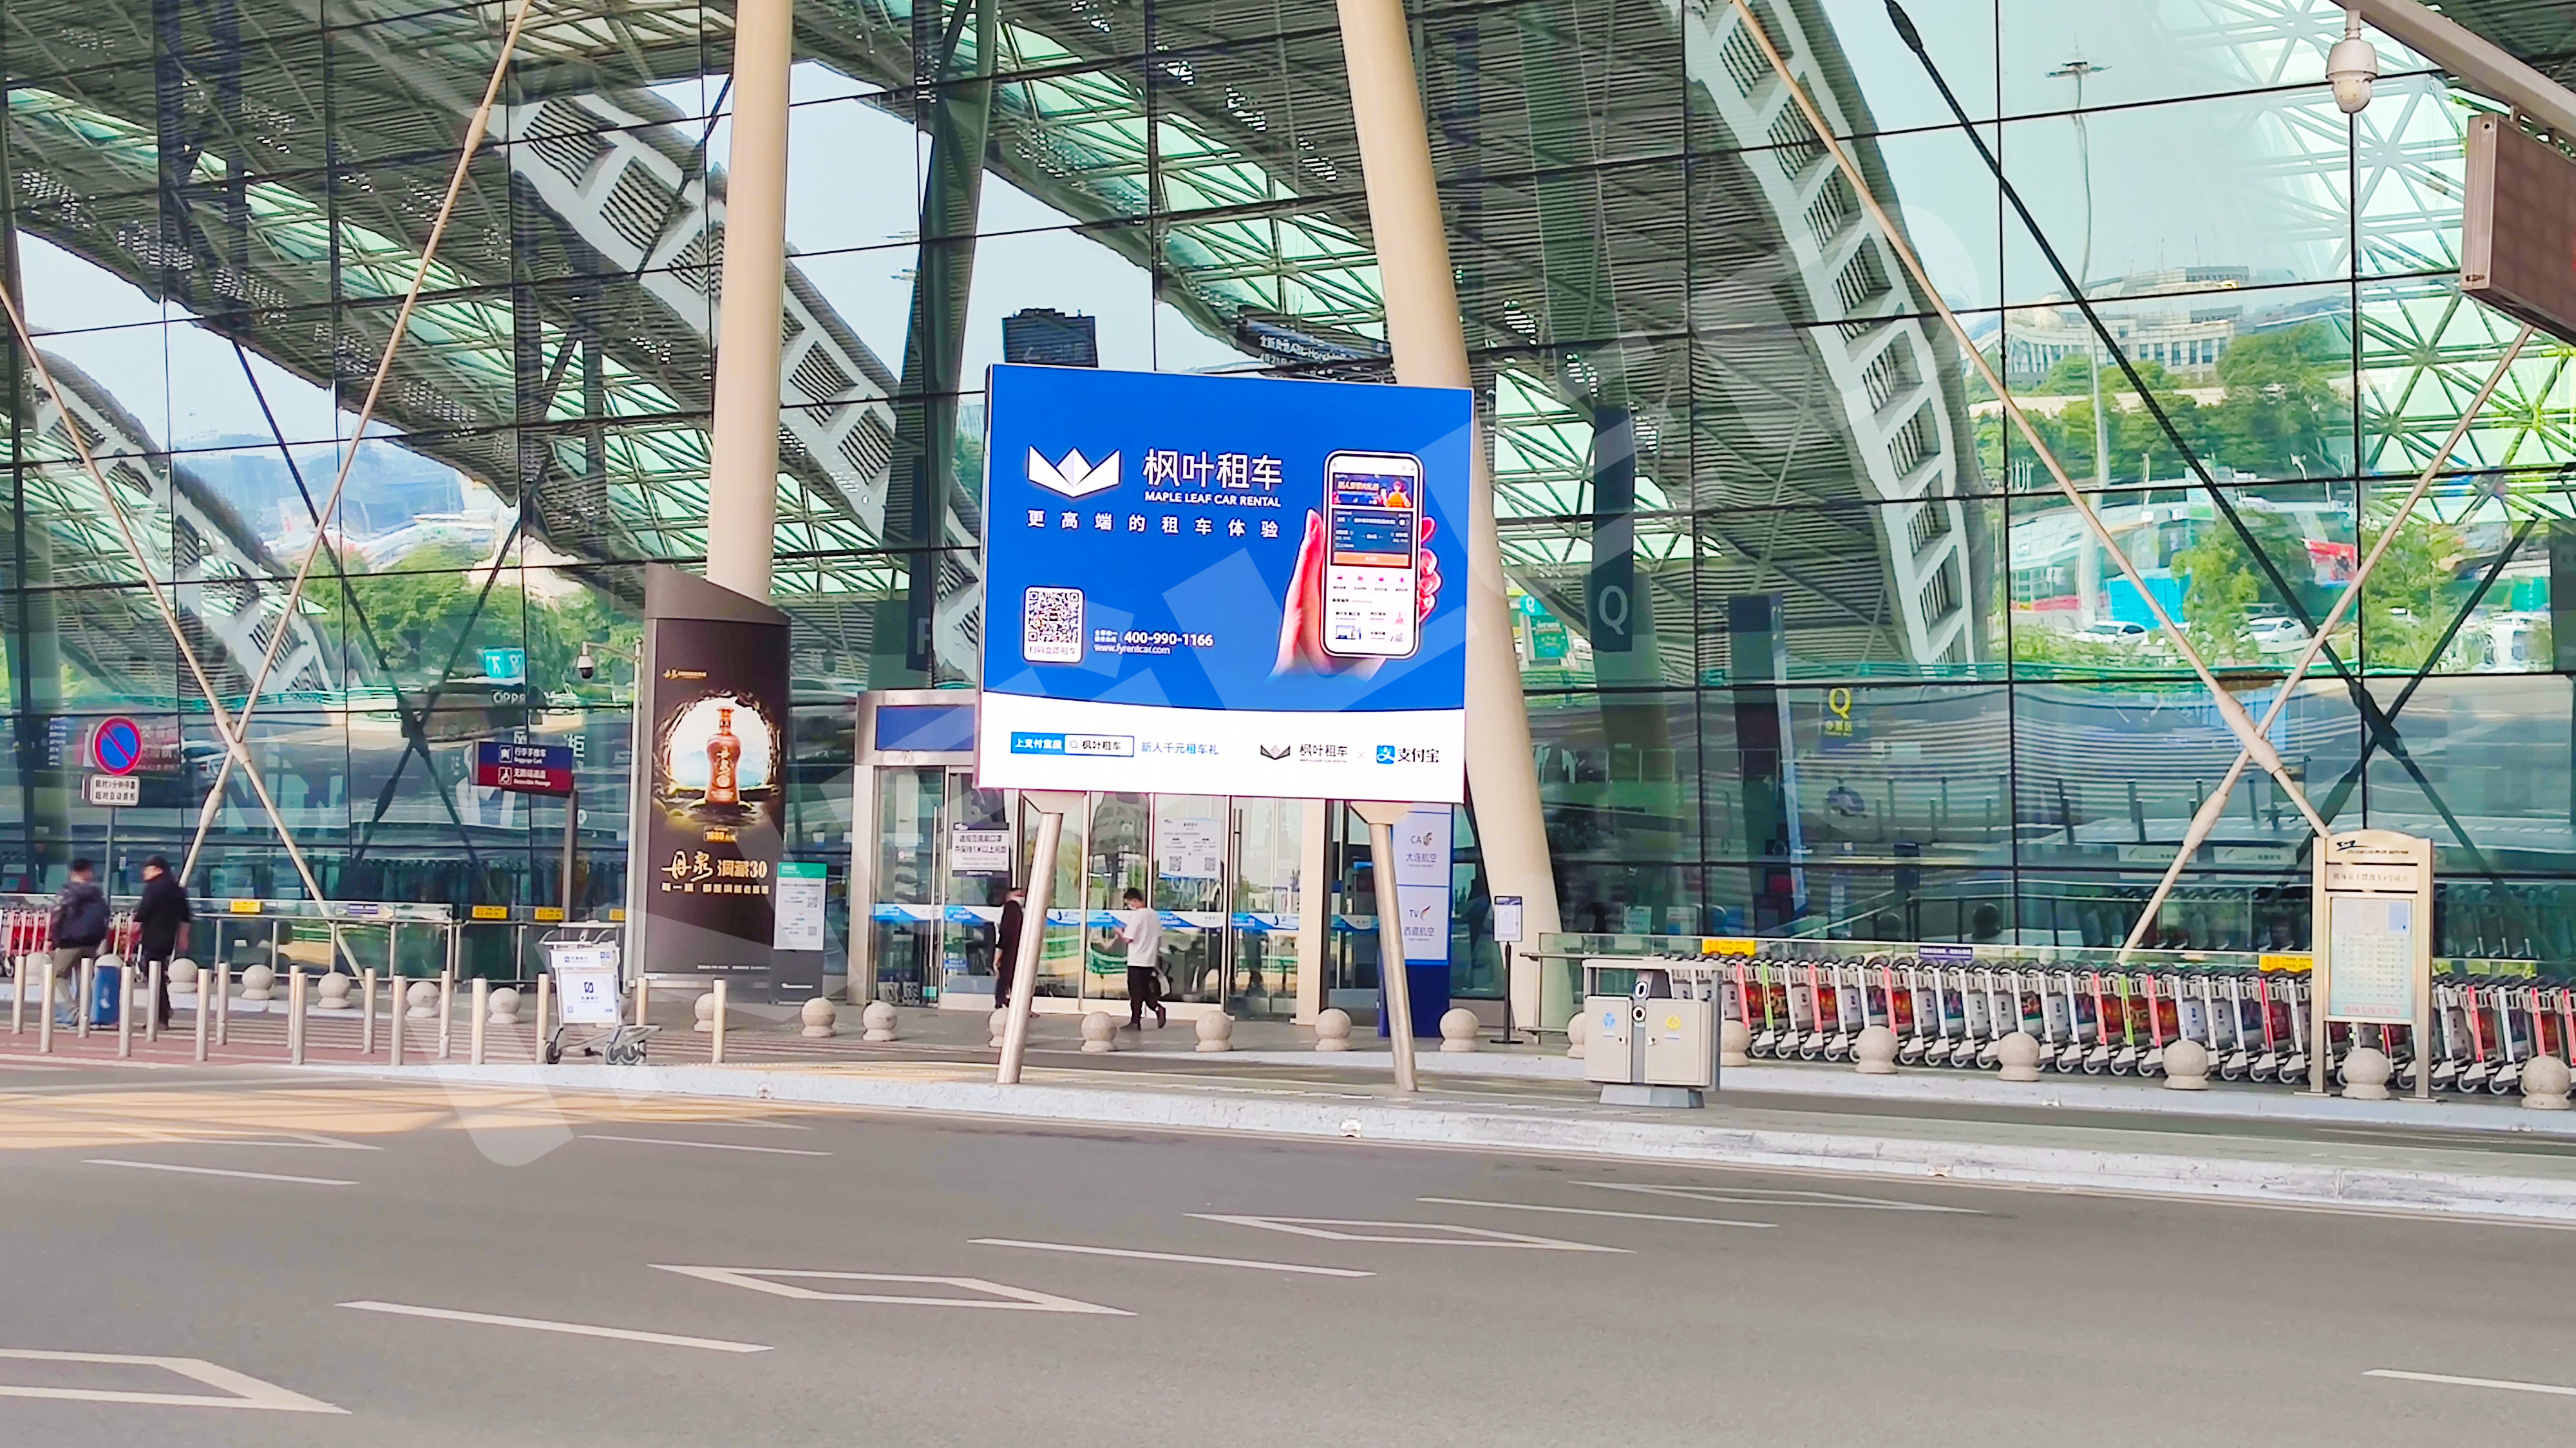 成都天府国际机场T2航站楼外车道旁竖立了四块全新的直立式LED广告牌